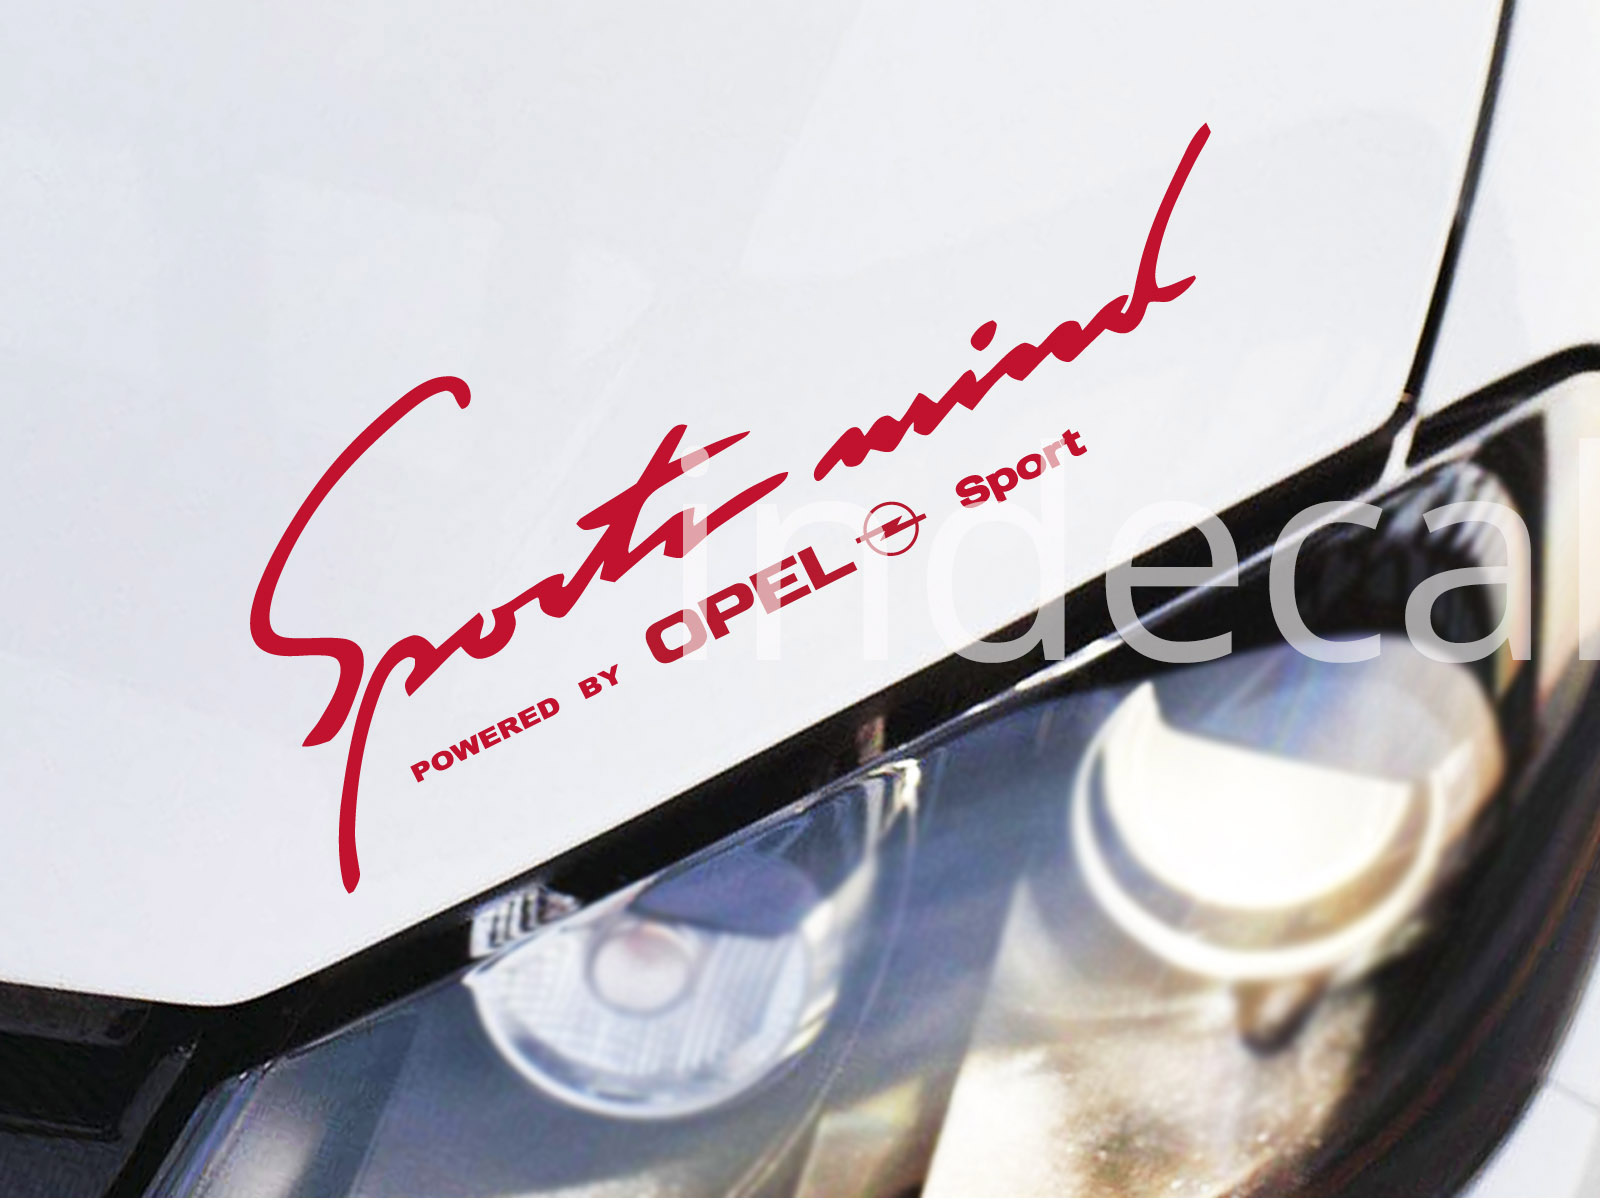 1 x Opel Sports Mind Sticker - Red